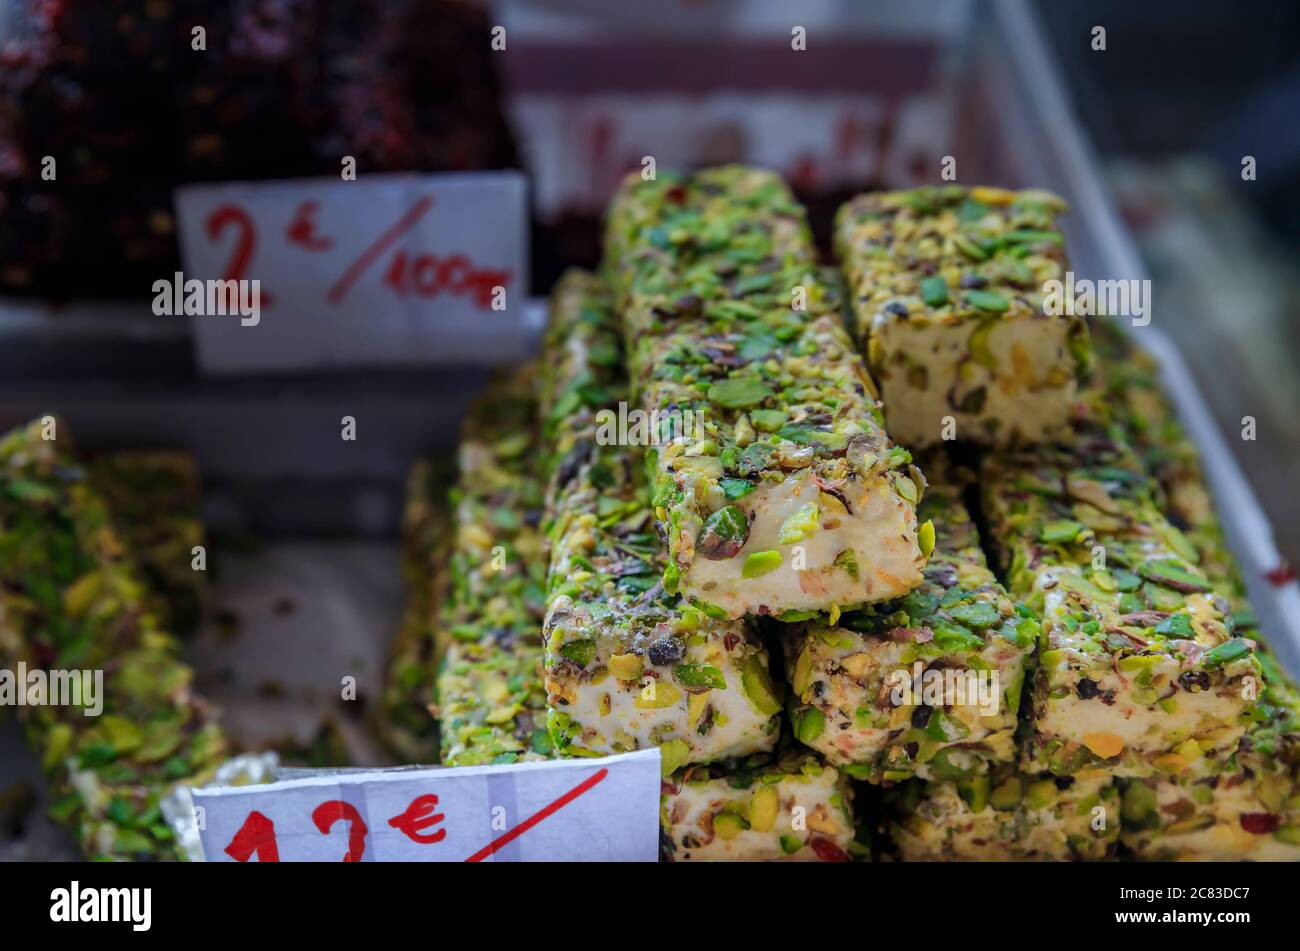 Sélection de friandises turk Delight ou rahat lokum et nougat exposées sur un marché agricole en plein air dans la vieille ville de Kotor, au Monténégro Banque D'Images